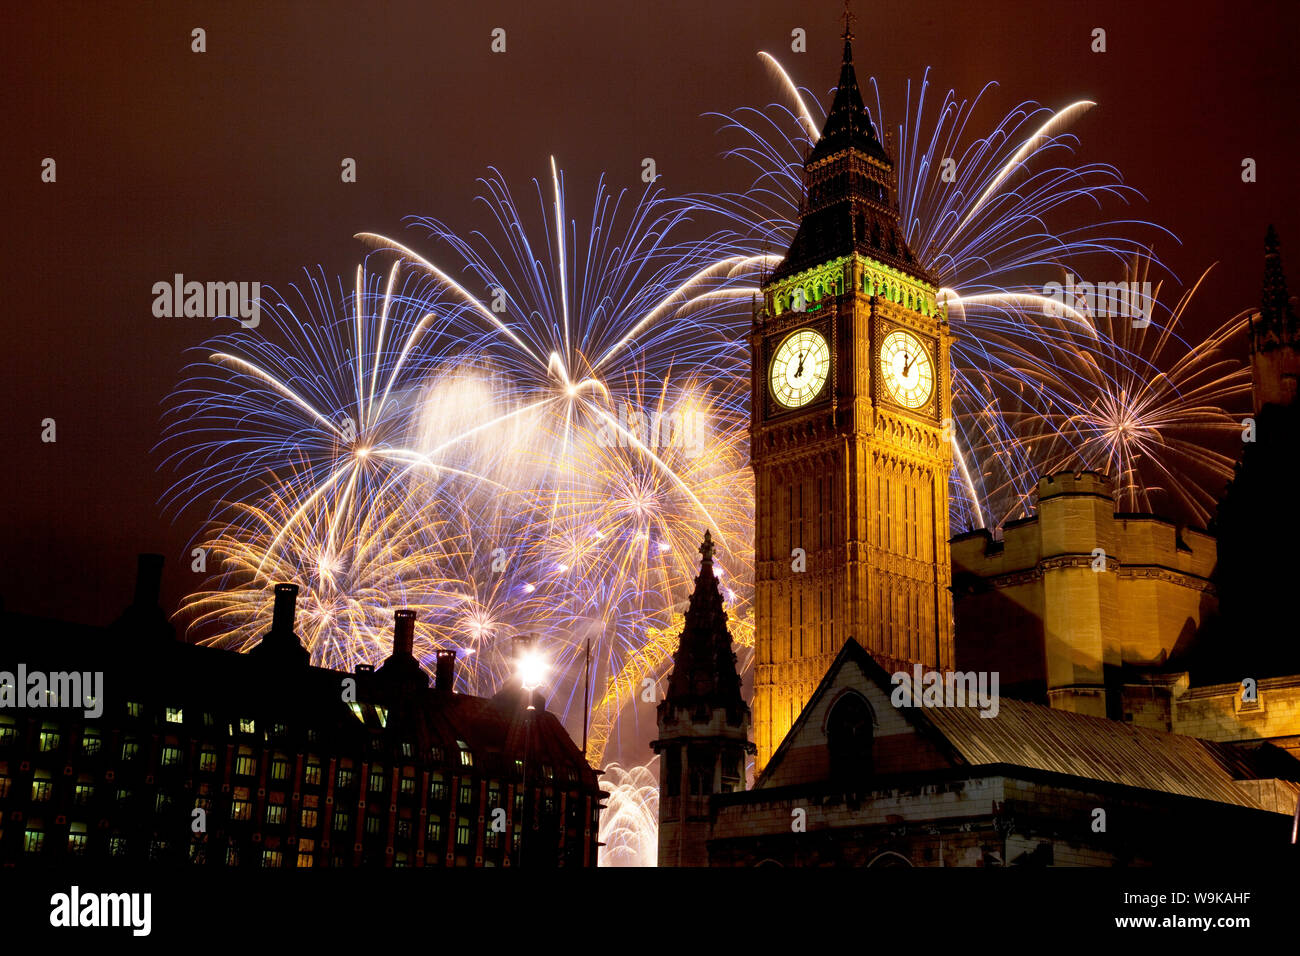 D'artifice du Nouvel An et de Big Ben, Houses of Parliament, Westminster, Londres, Angleterre, Royaume-Uni, Europe Banque D'Images